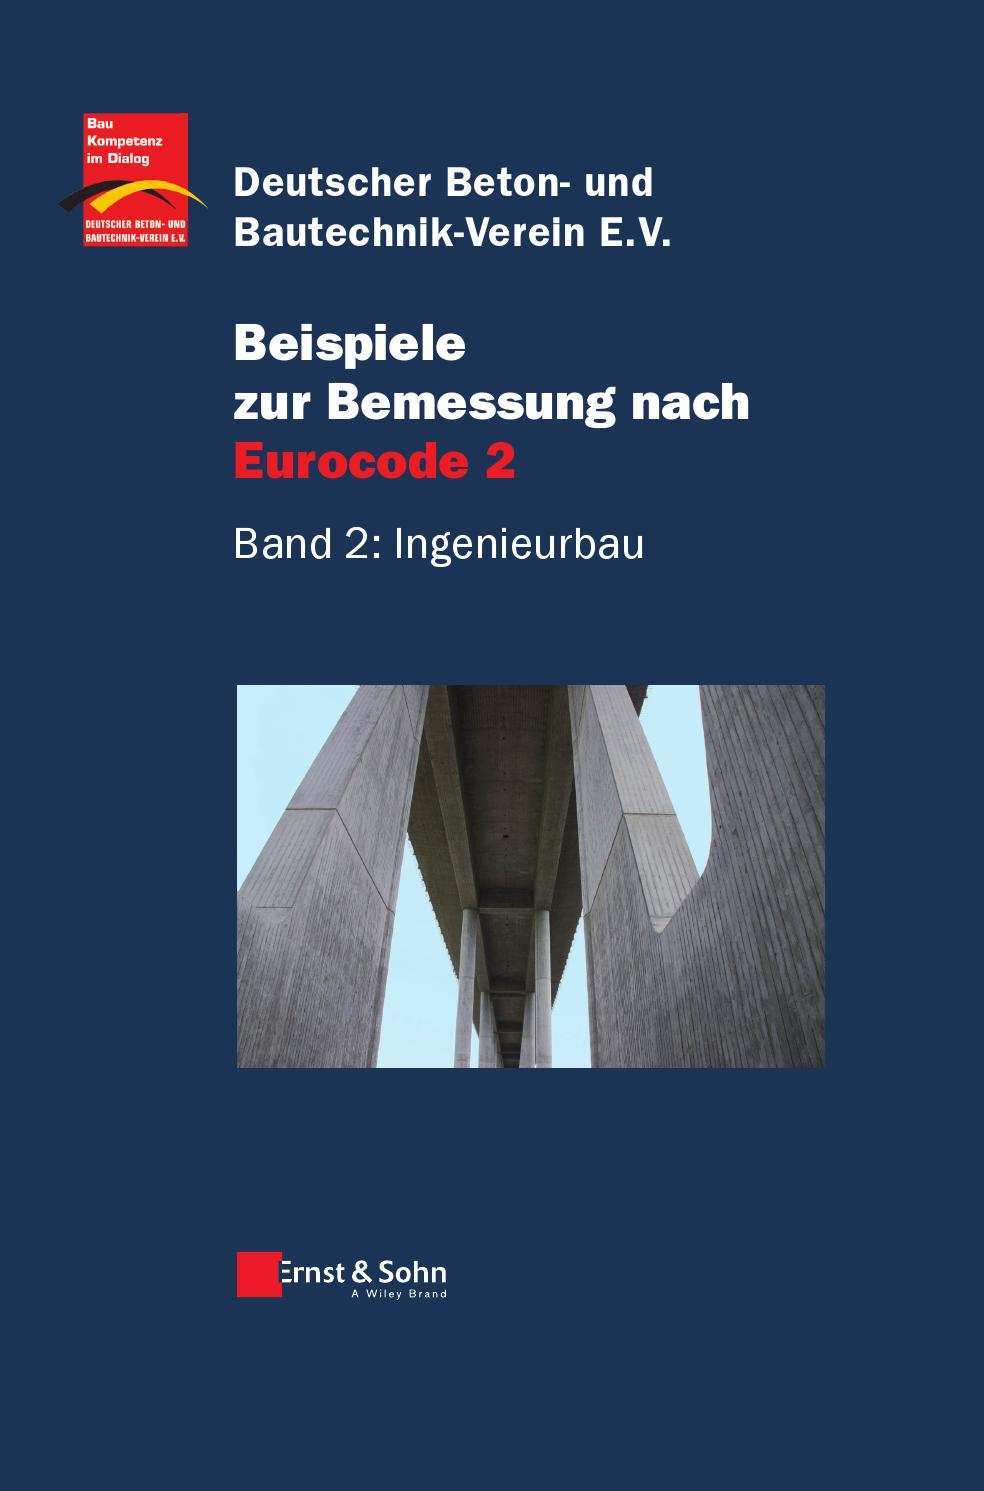 Beispiele Zur Bemessung Nach Eurocode 2 Band 2 Ingenieurbau Dbv Hrsg By Ernst Sohn Issuu